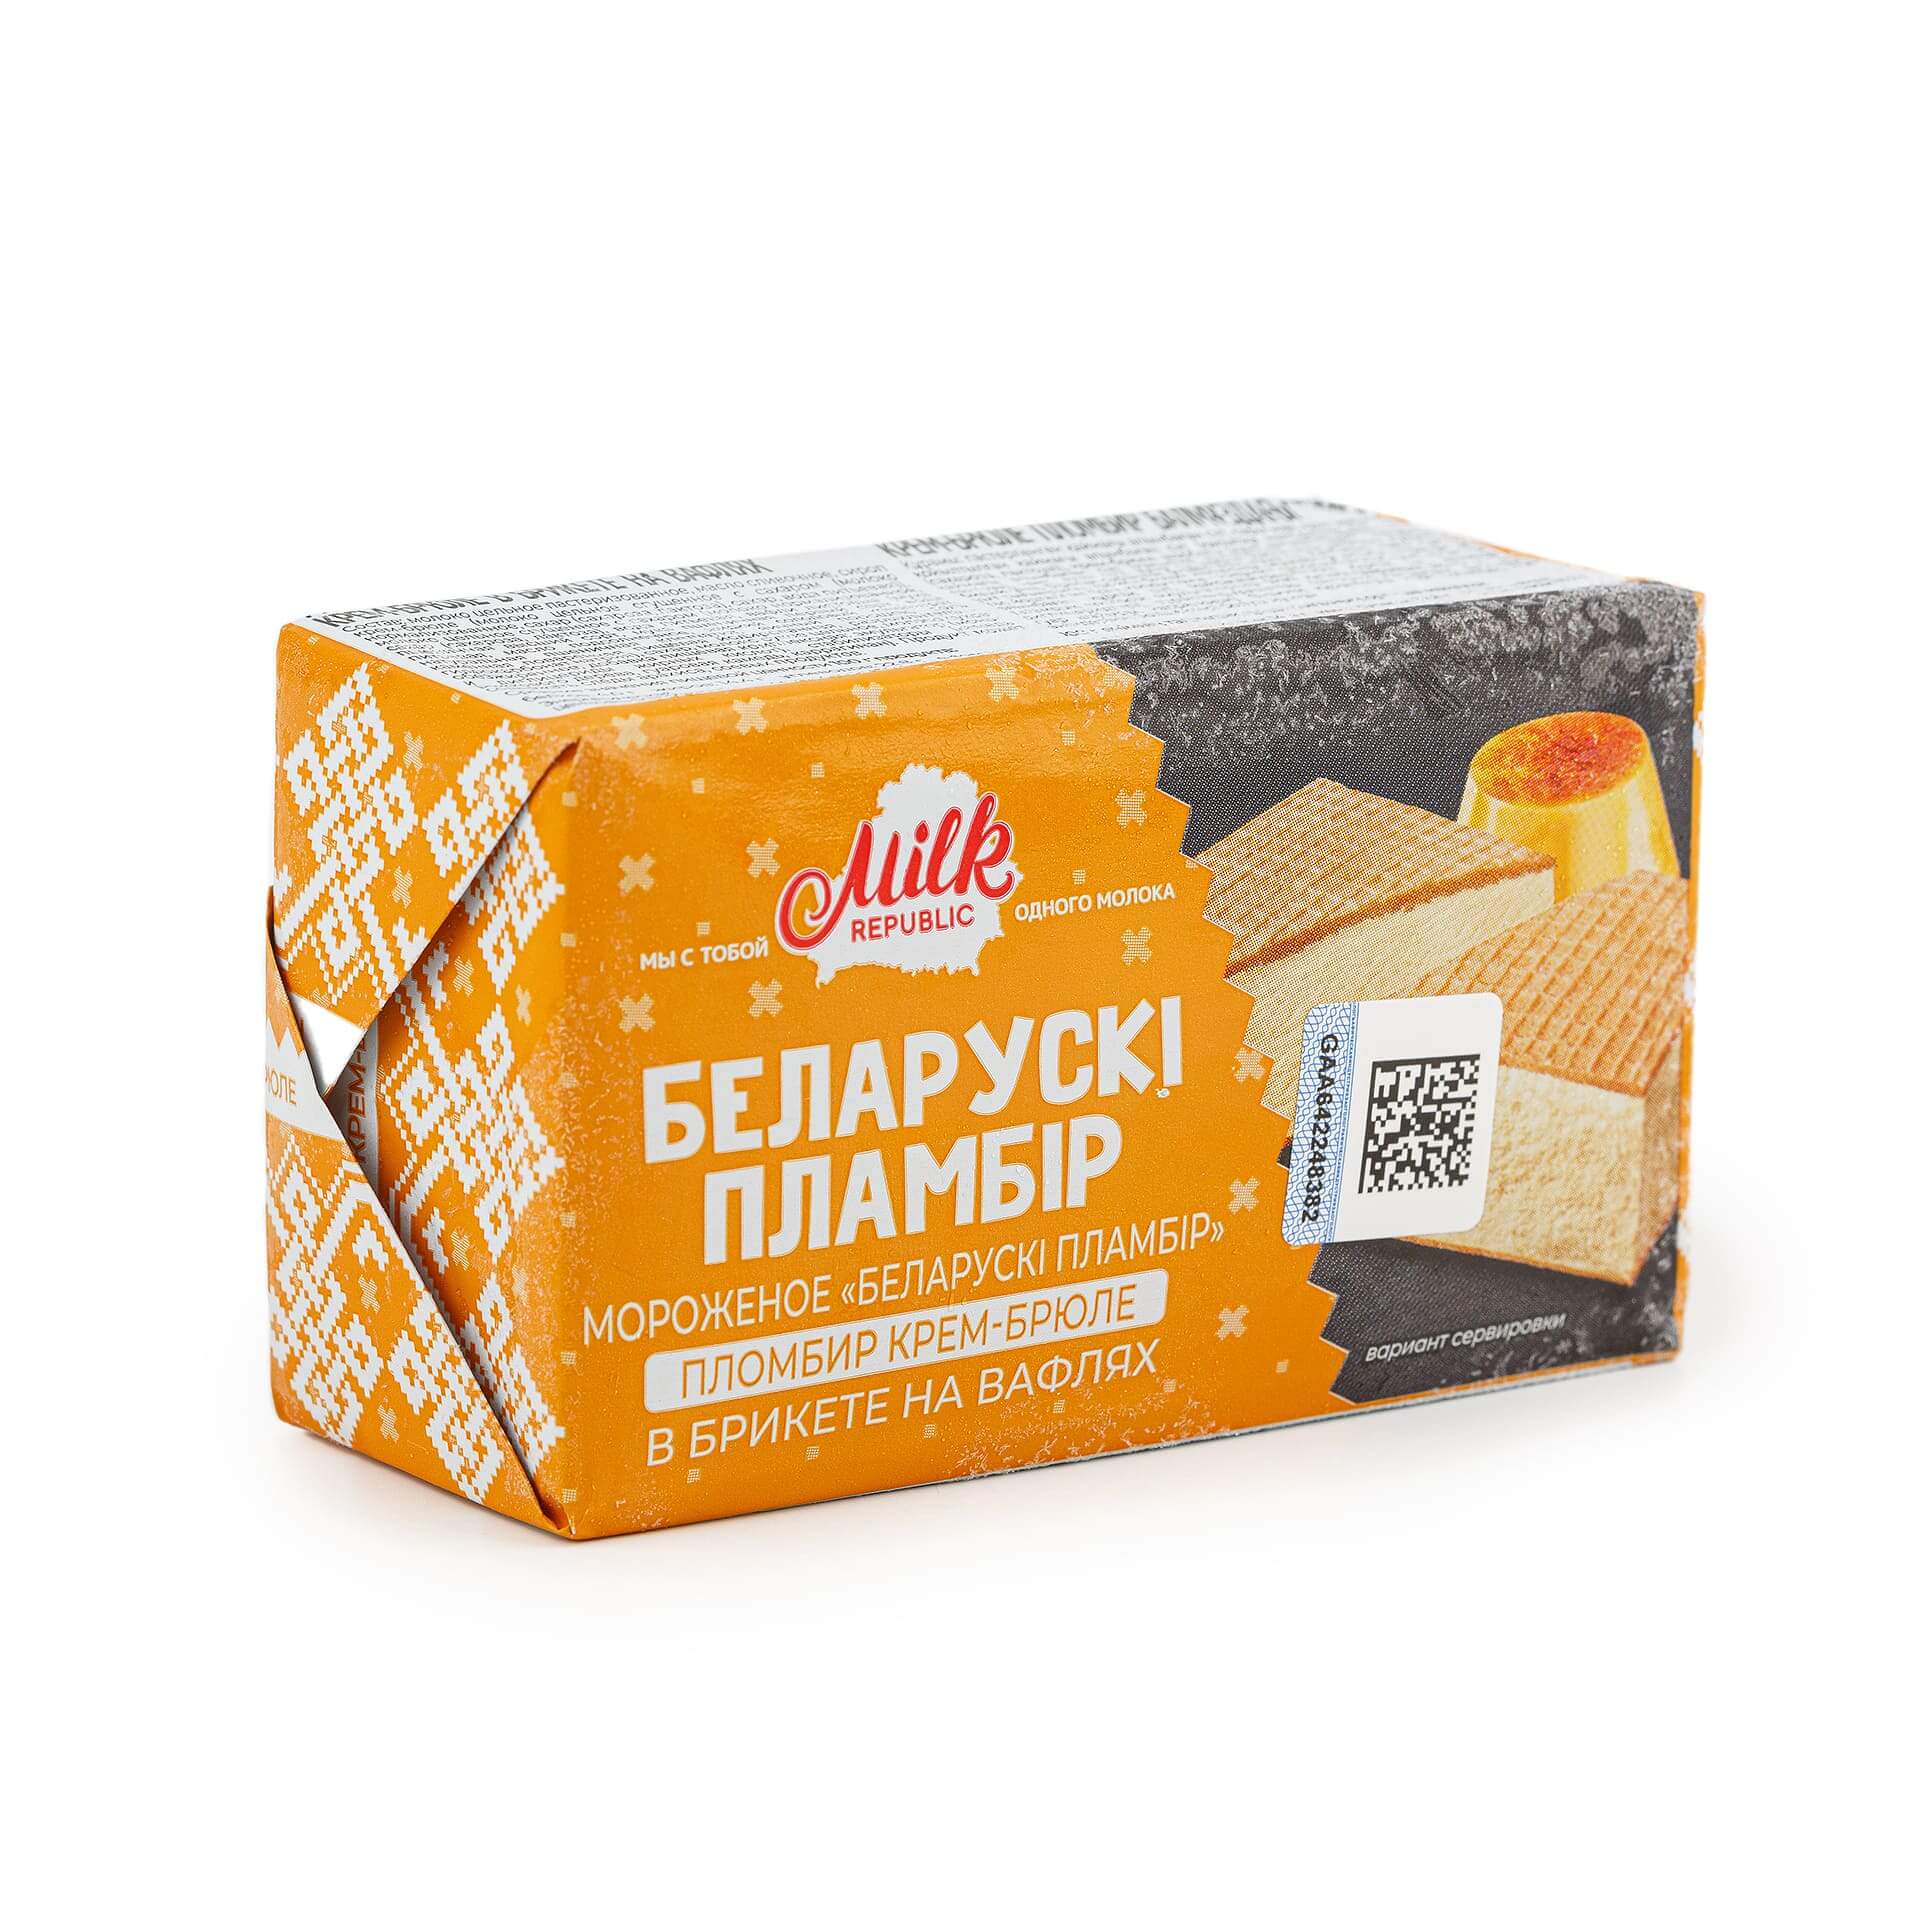 Мороженое пломбир крем-брюле брикет в вафлях Беларускi пламбiр 100 г 7041LED, общий вид, купить оптом с доставкой по москве и московской области, недорого, низкая цена